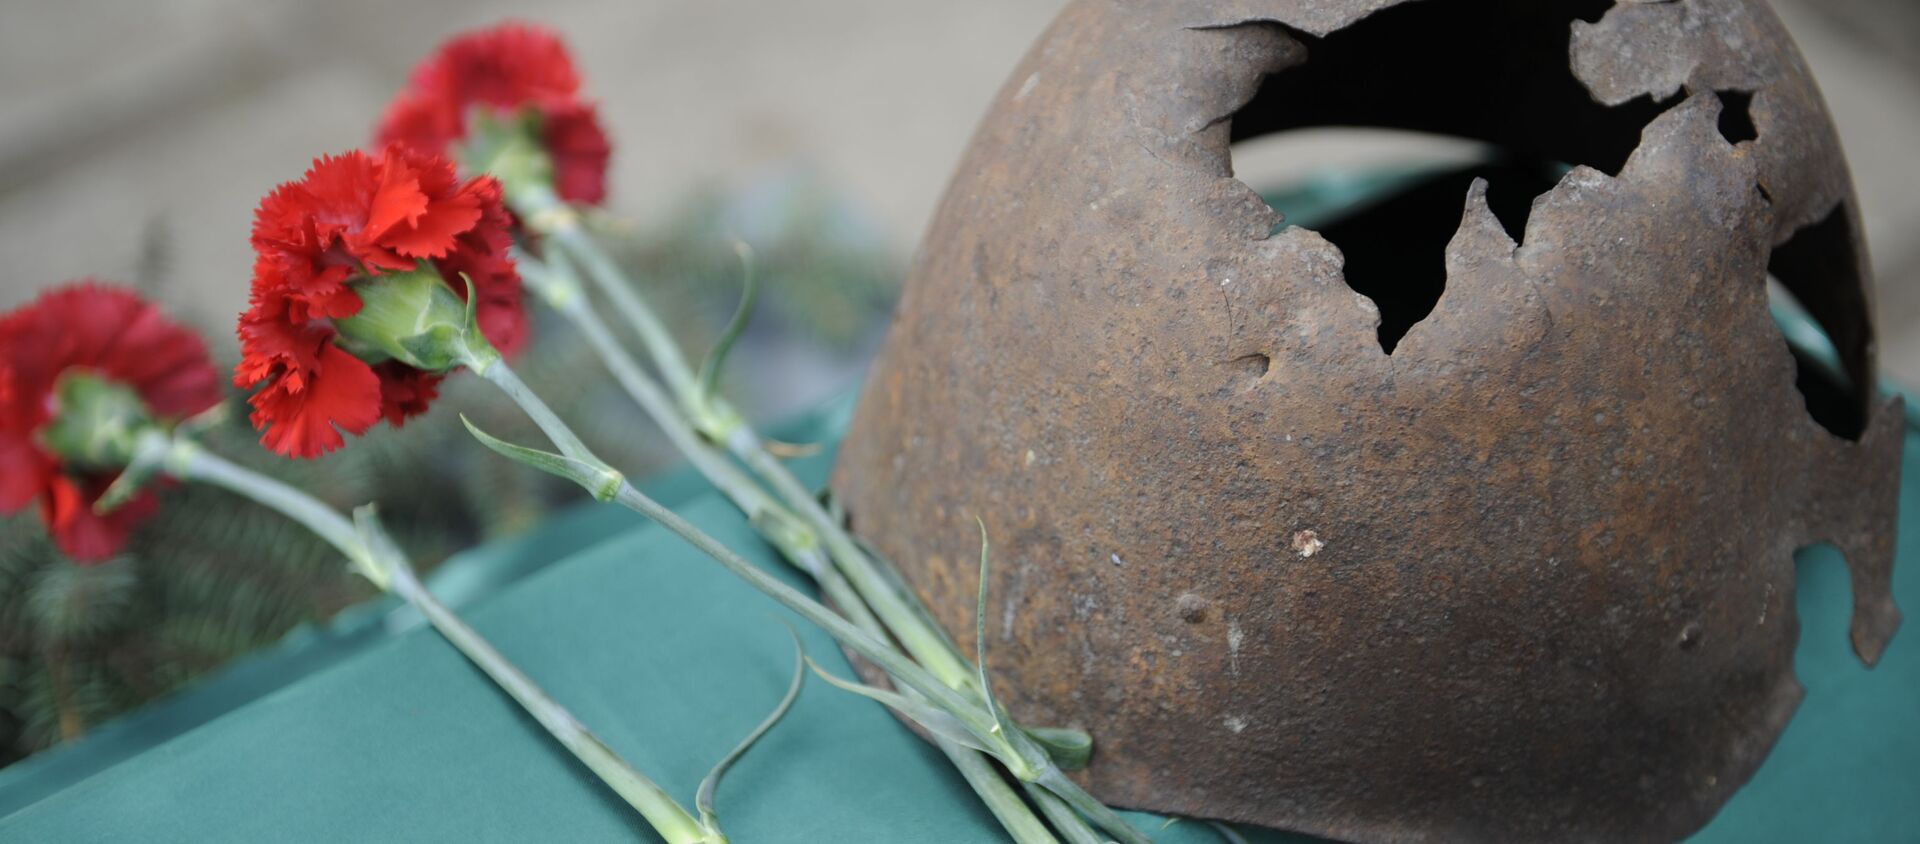 Передача РФ останков военнослужащего, погибшего в 1943 году в ходе боев за Славянск - Sputnik Аҧсны, 1920, 30.04.2021